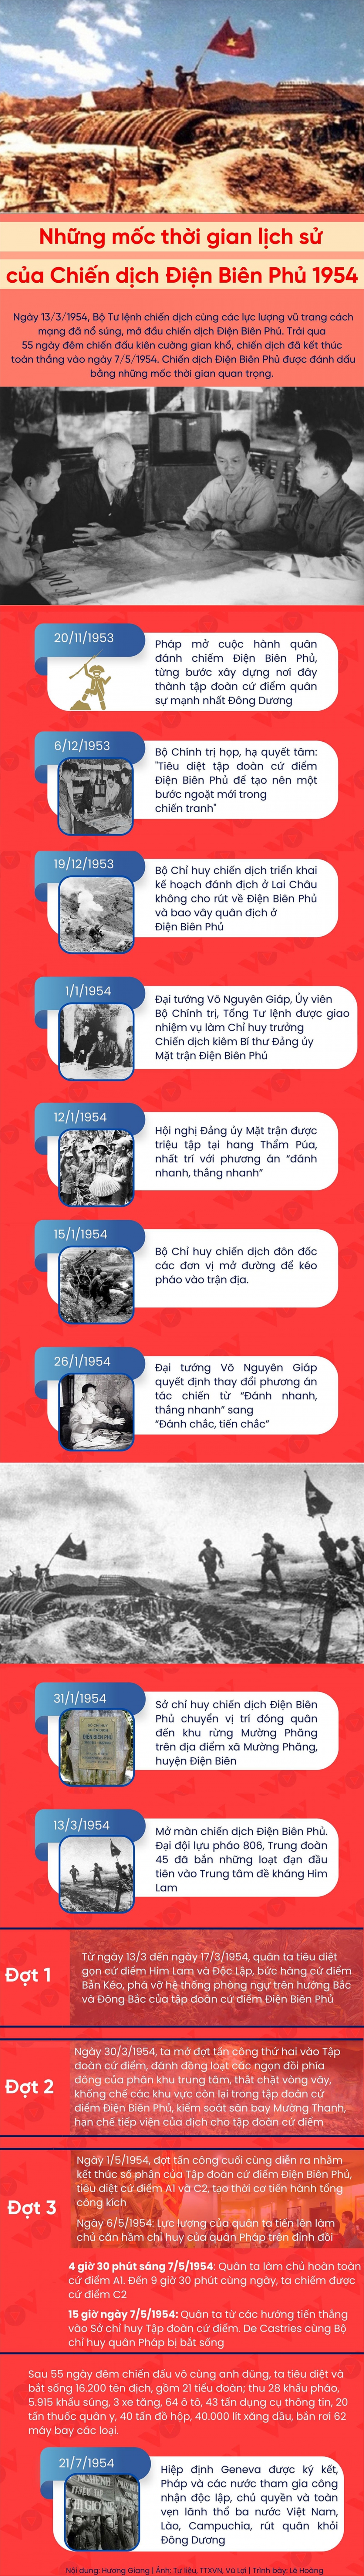 Những mốc thời gian lịch sử của Chiến dịch Điện Biên Phủ 1954- Ảnh 1.